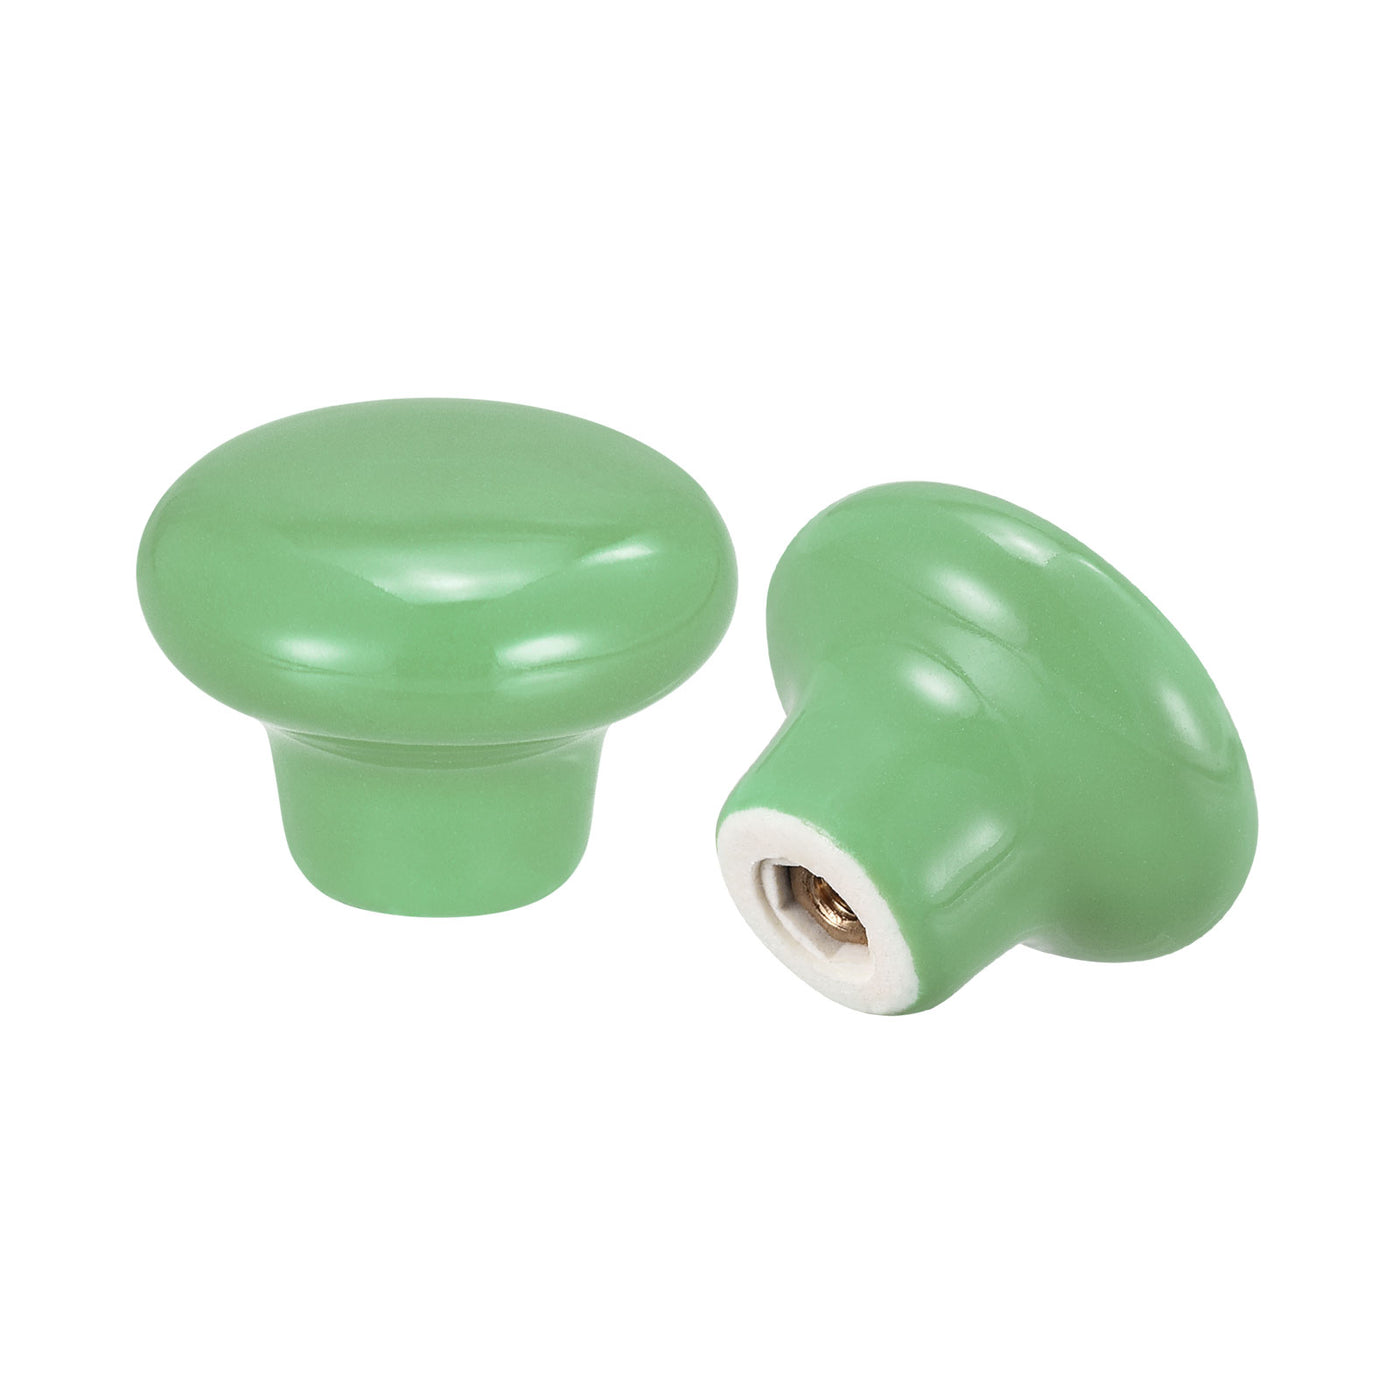 uxcell Uxcell 32x24mm Ceramic Drawer Knobs, 15pcs Mushroom Shape Door Pull Handles Green